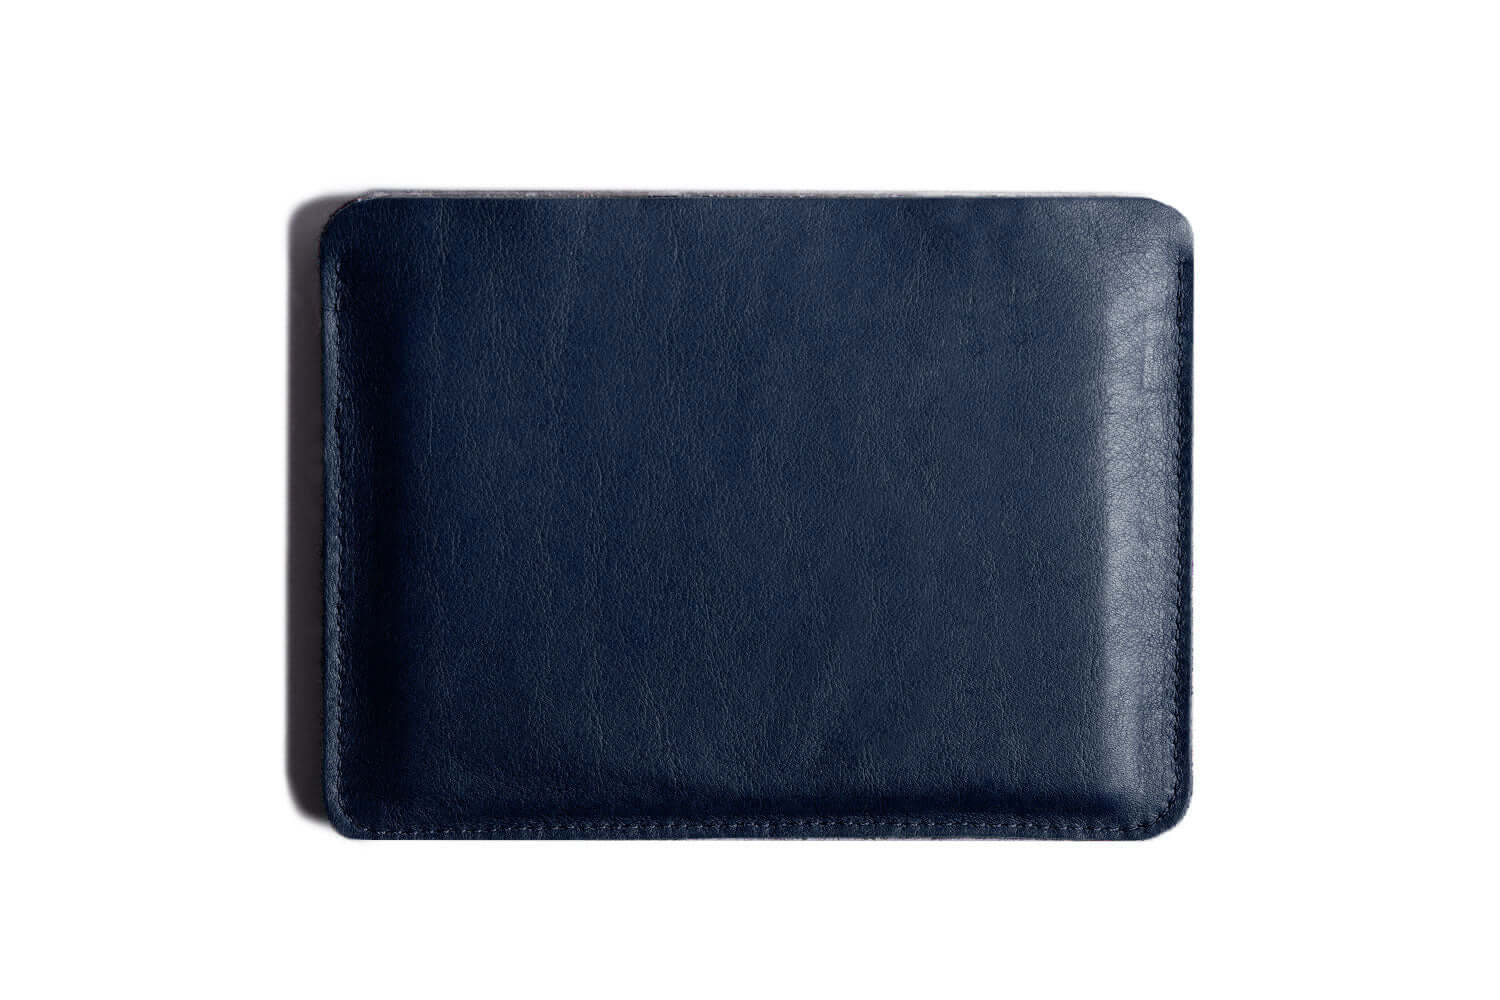 Porte-passeport plat en cuir bleu marine/feutre clair